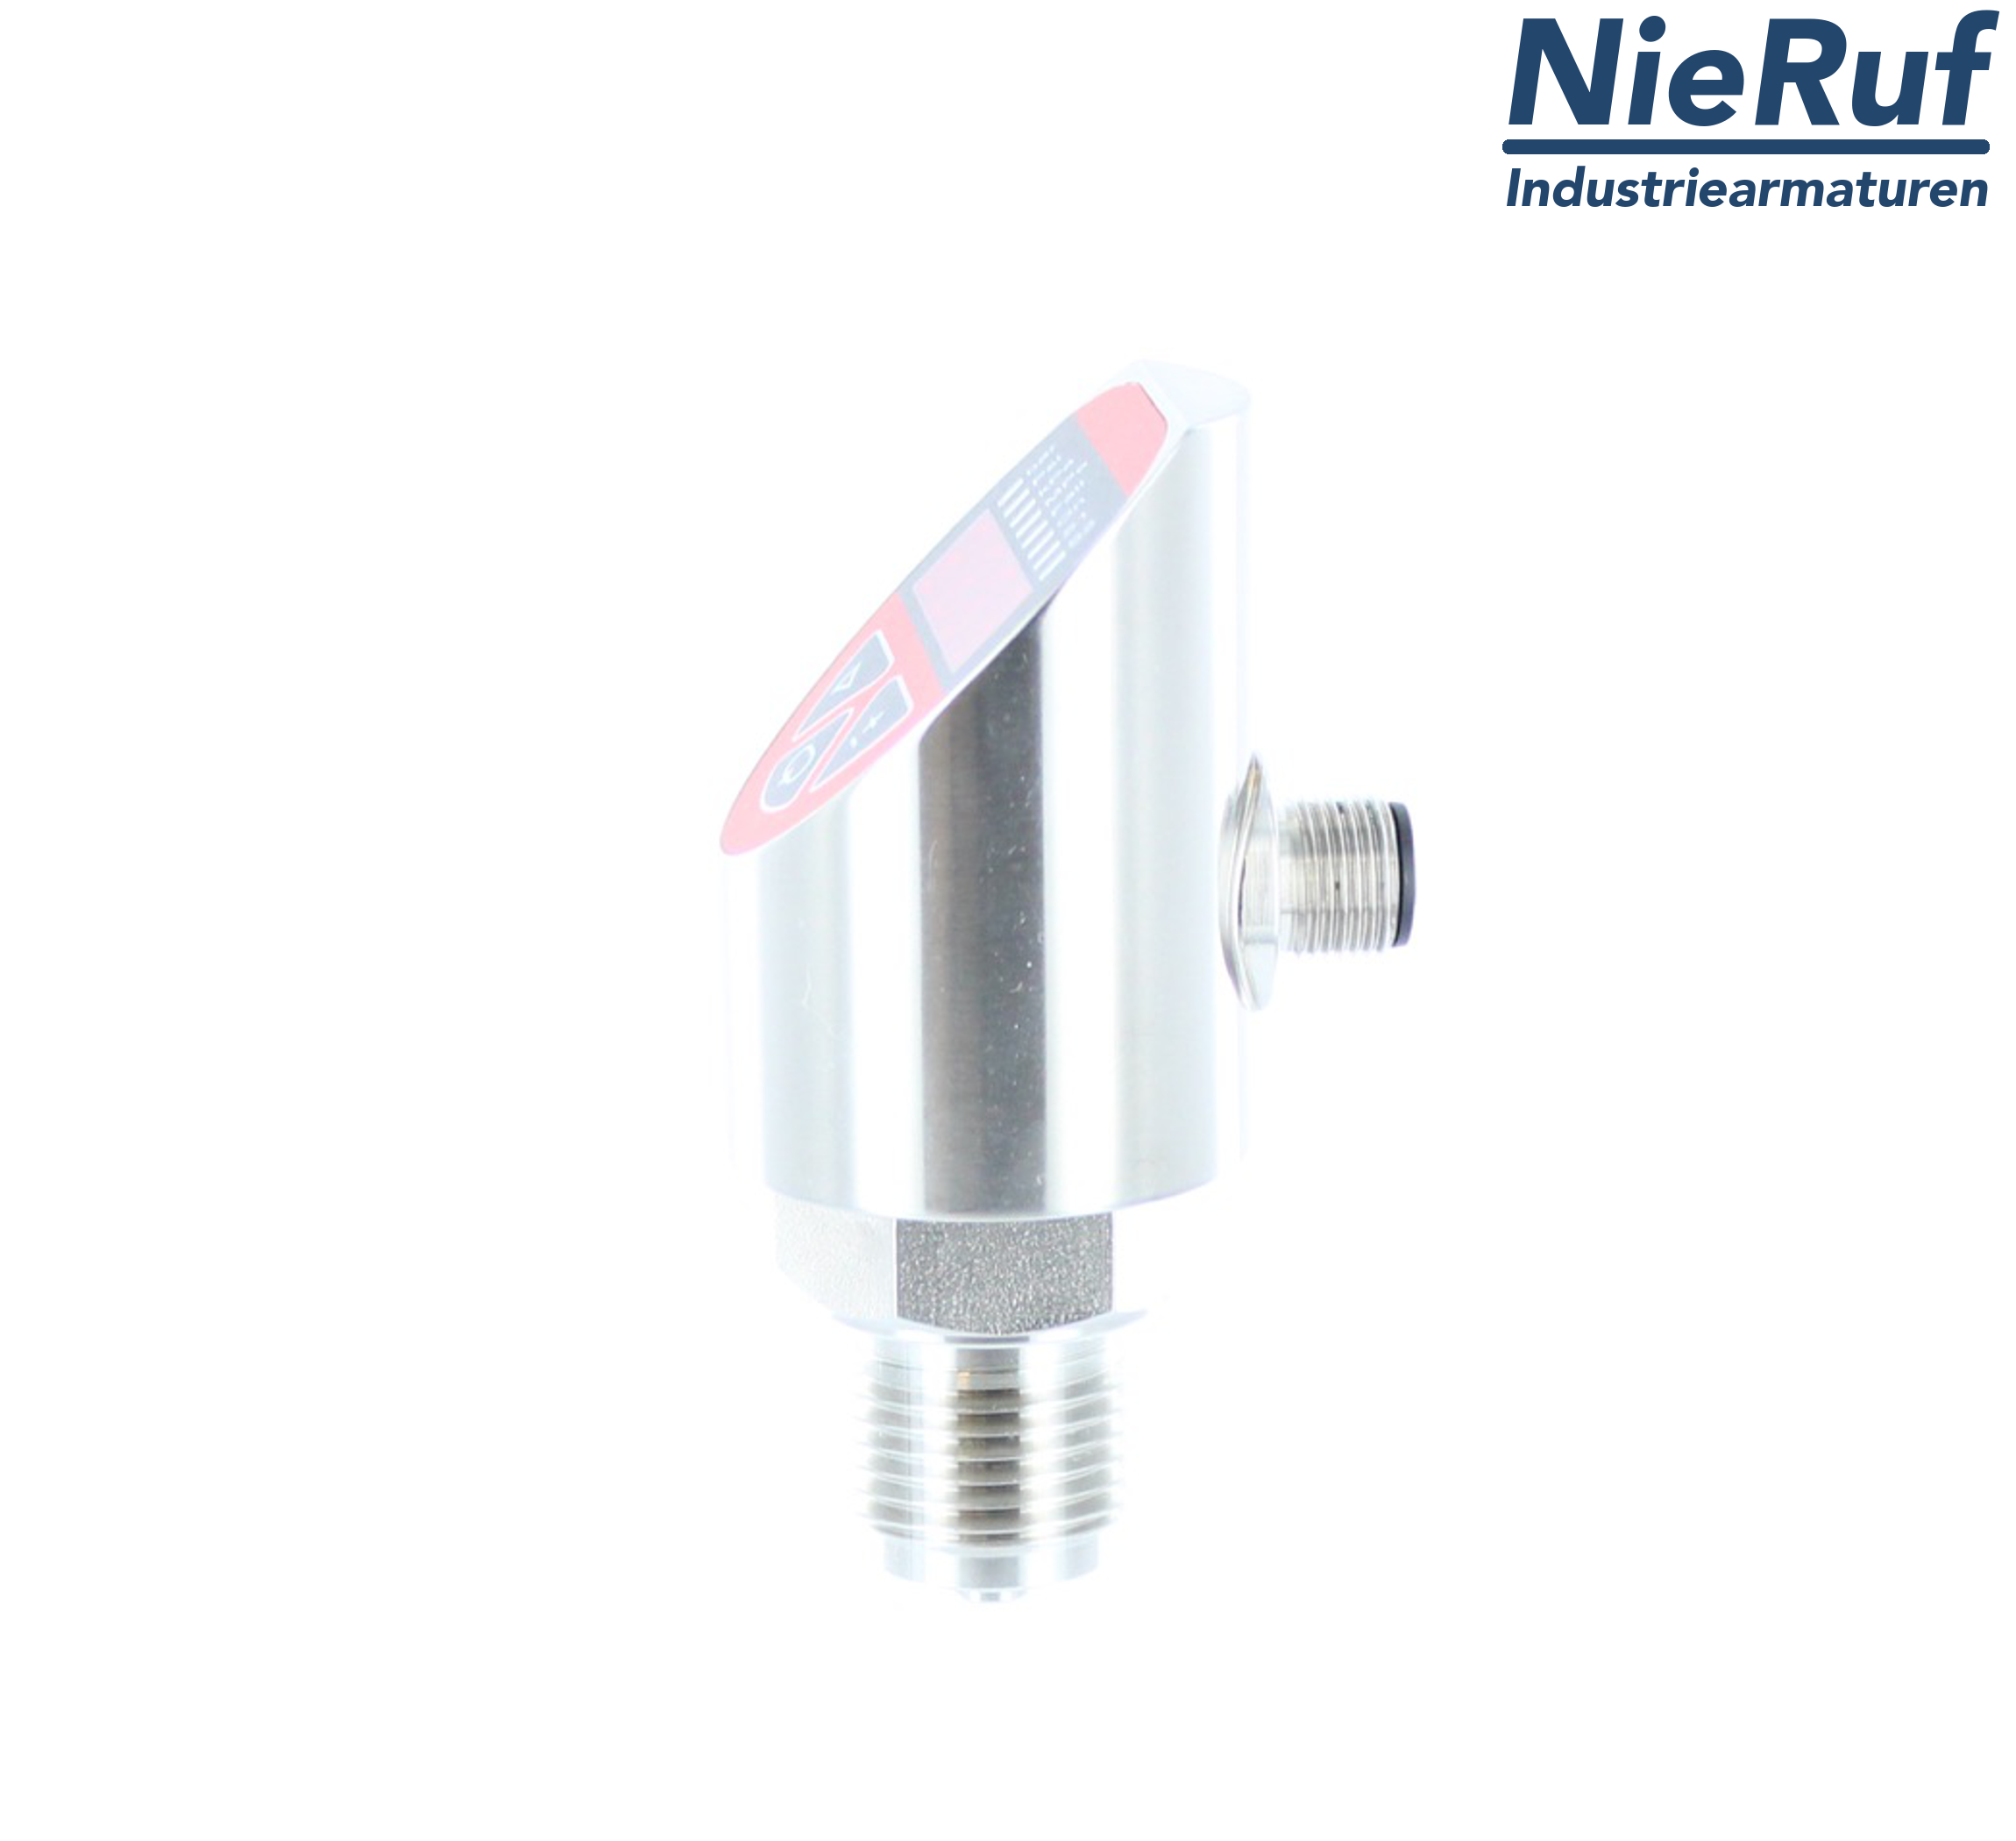 digital pressure sensor G 1/2" B IB 4-wire: 1xPNP, 1x4 - 20mA FPM 0,0 - 60,0 bar